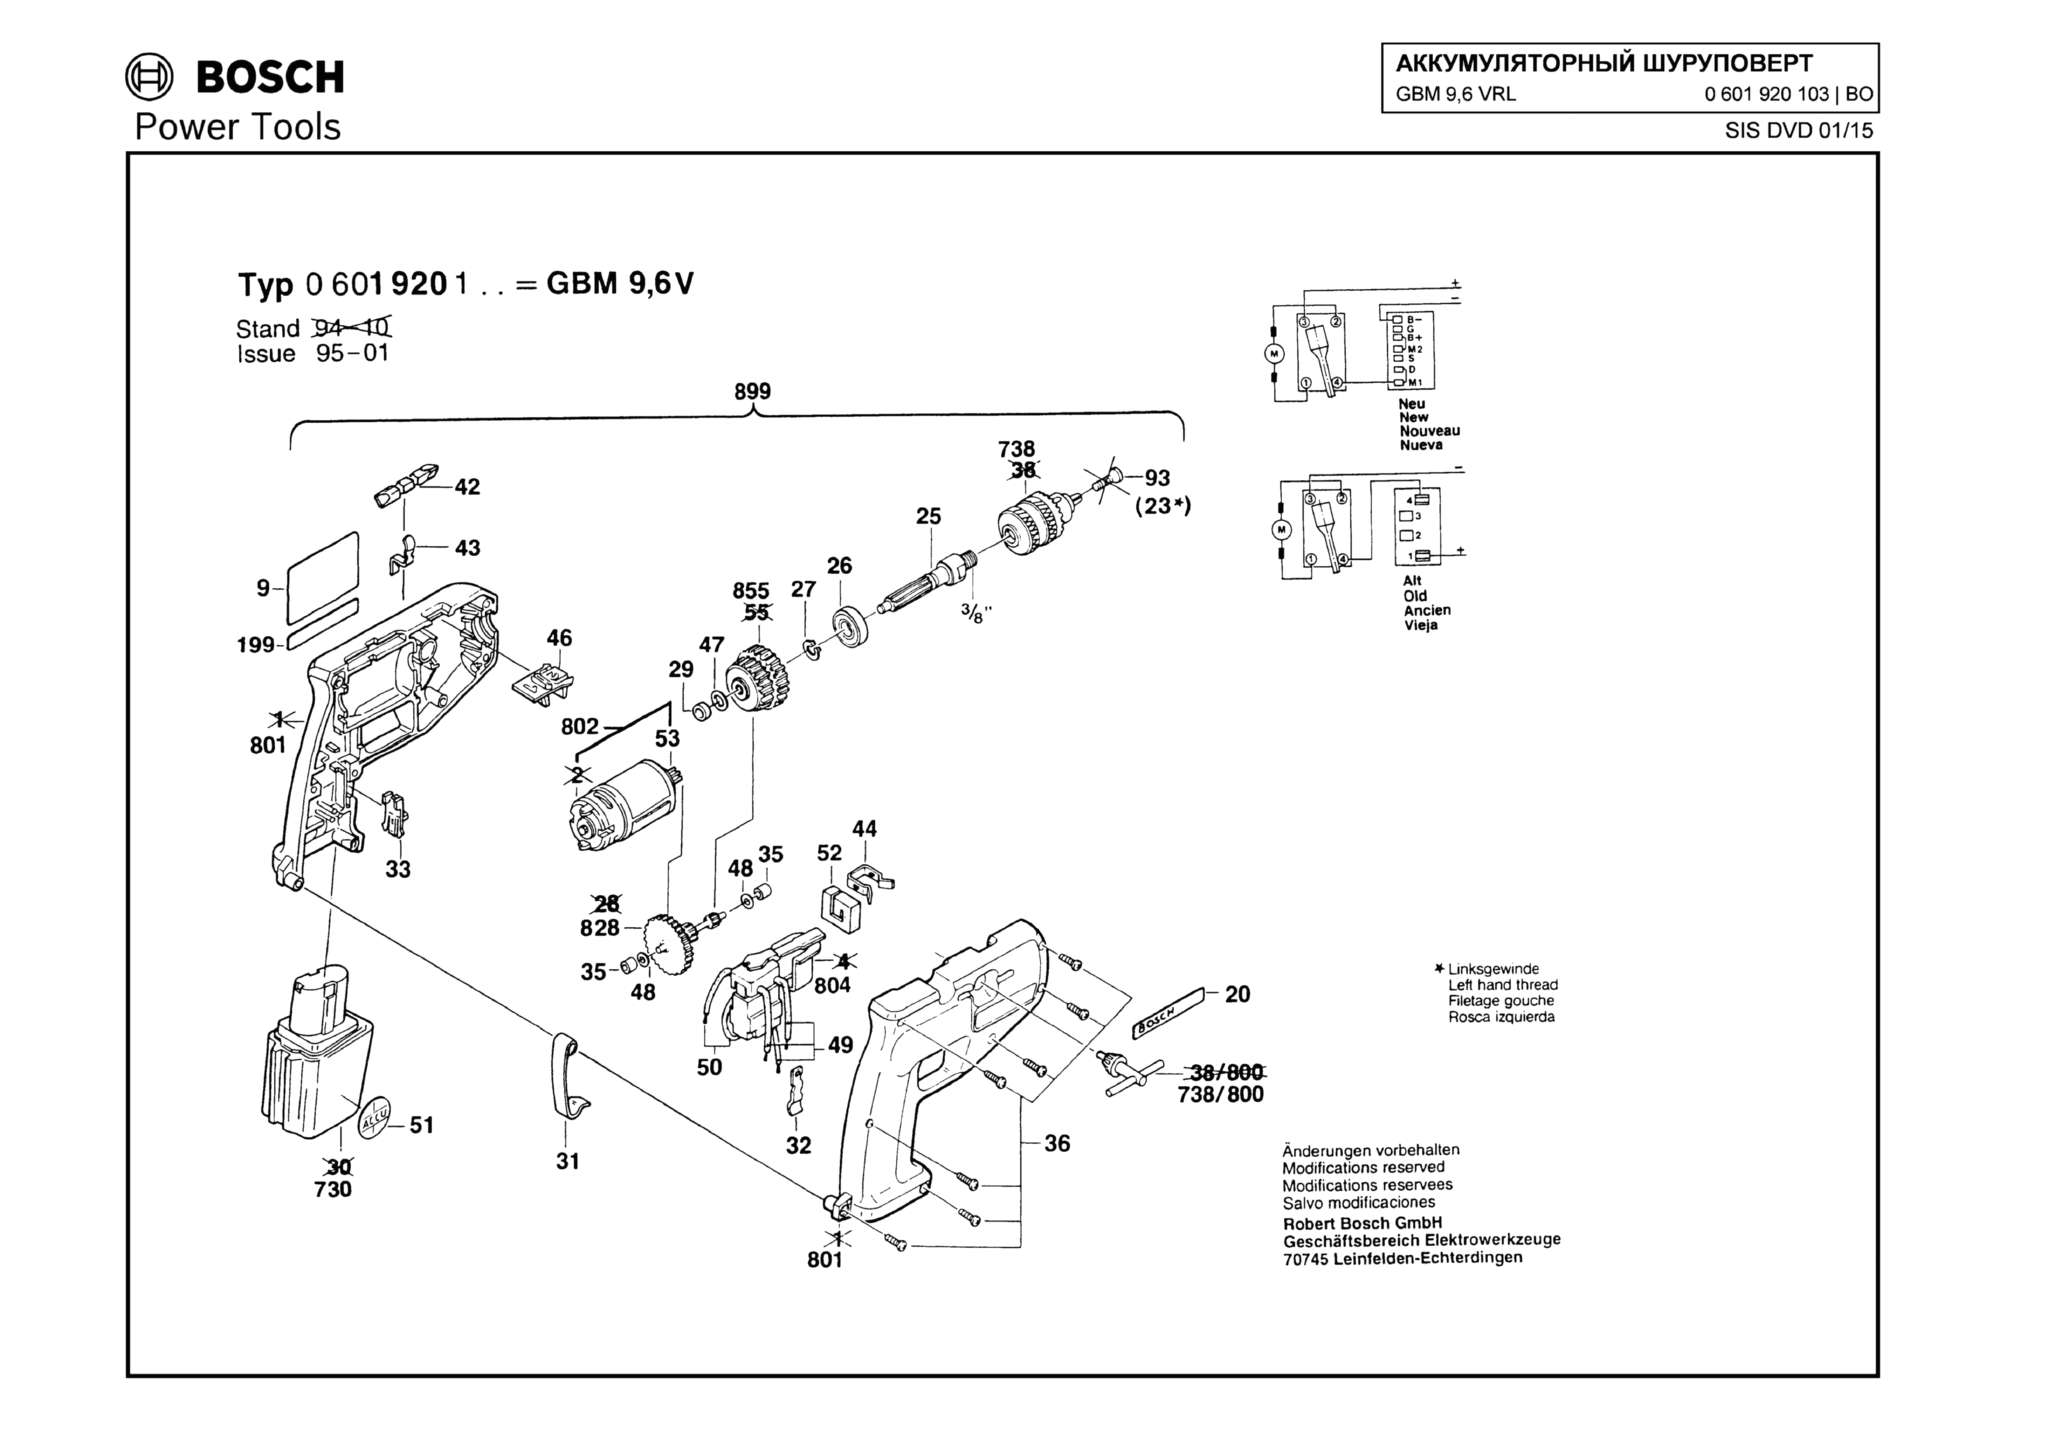 Запчасти, схема и деталировка Bosch GBM 9,6 VRL (ТИП 0601920103)